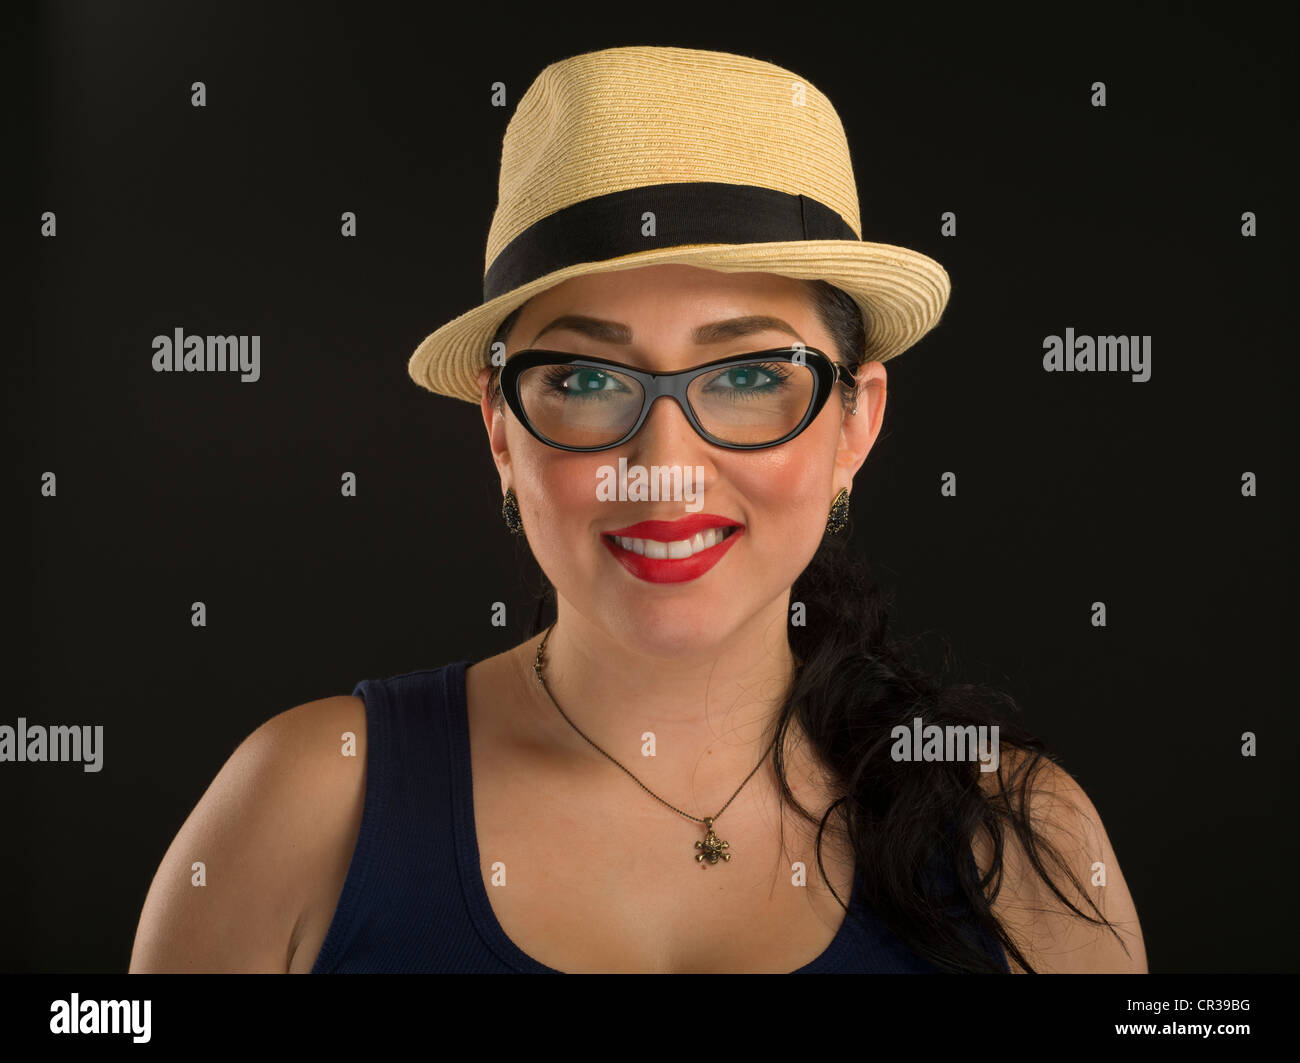 Jeune mexicaine American Woman wearing glasses style panama un chapeau de paille avec ruban noir et rouge à lèvres rouge Banque D'Images